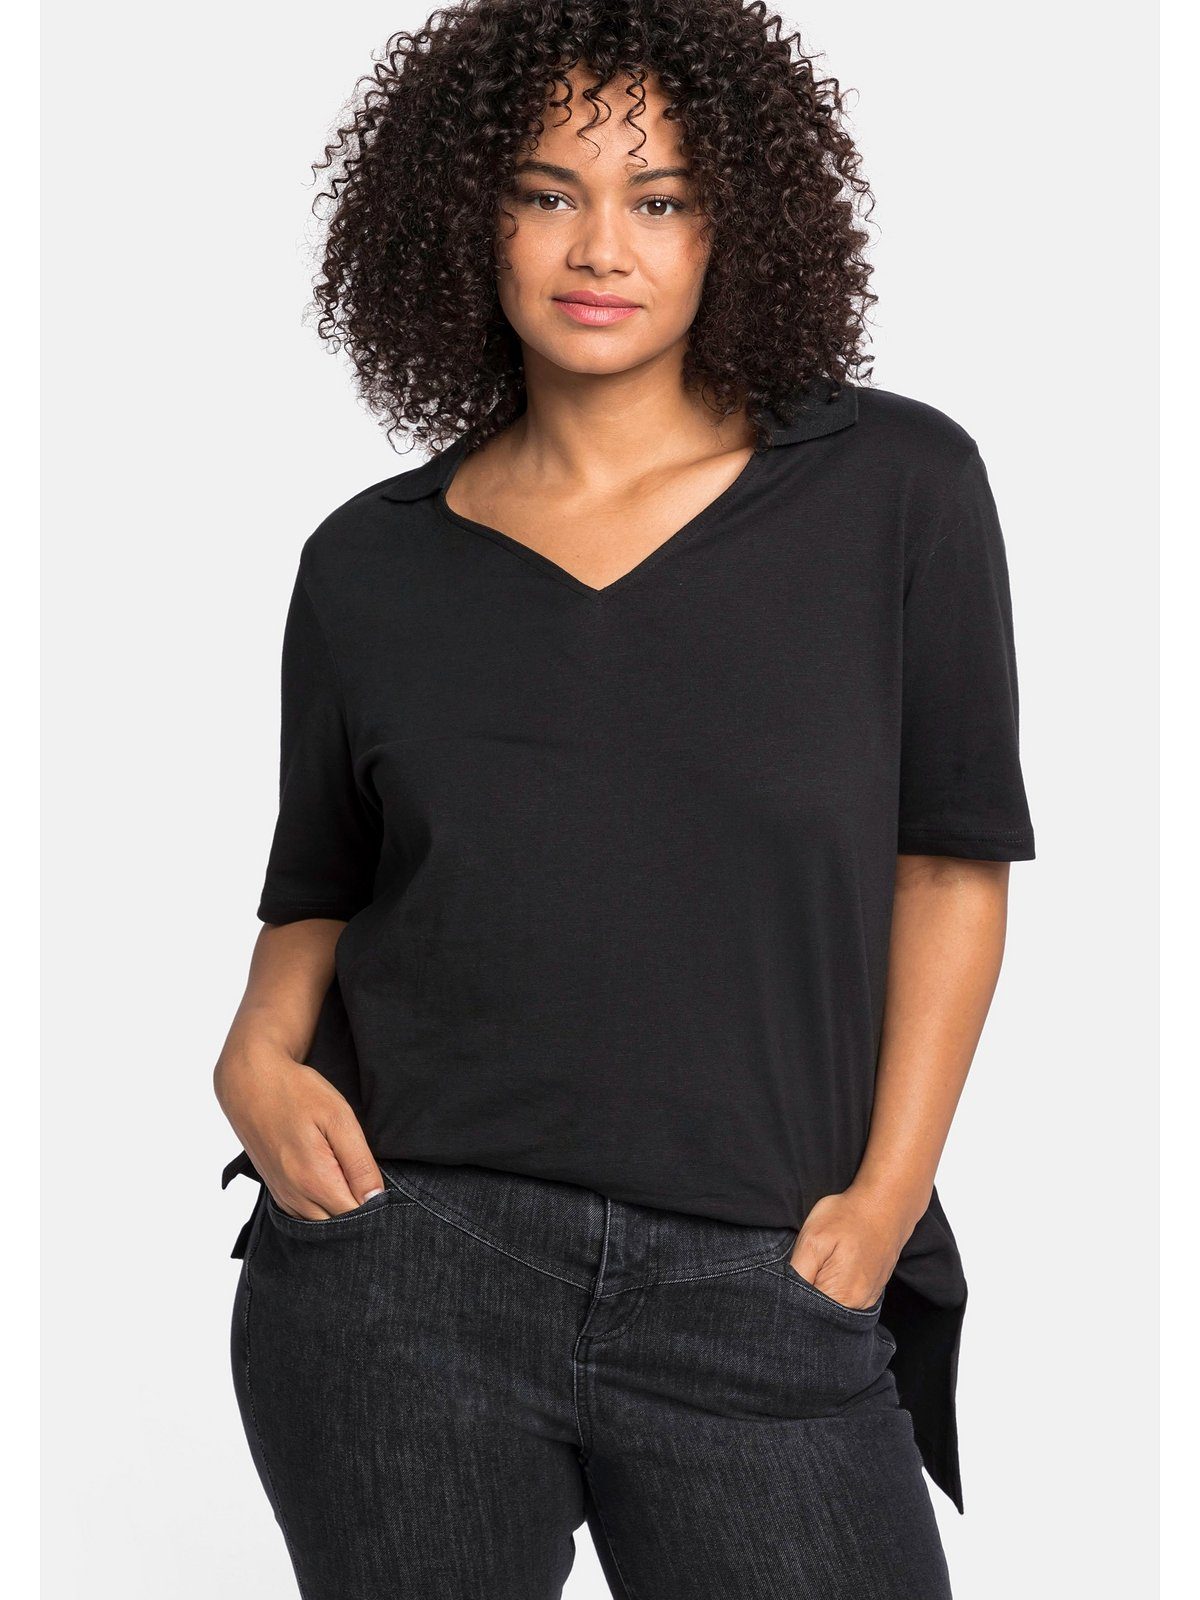 asymmetrischem Saum T-Shirt Größen schwarz Polokragen Große Sheego und mit